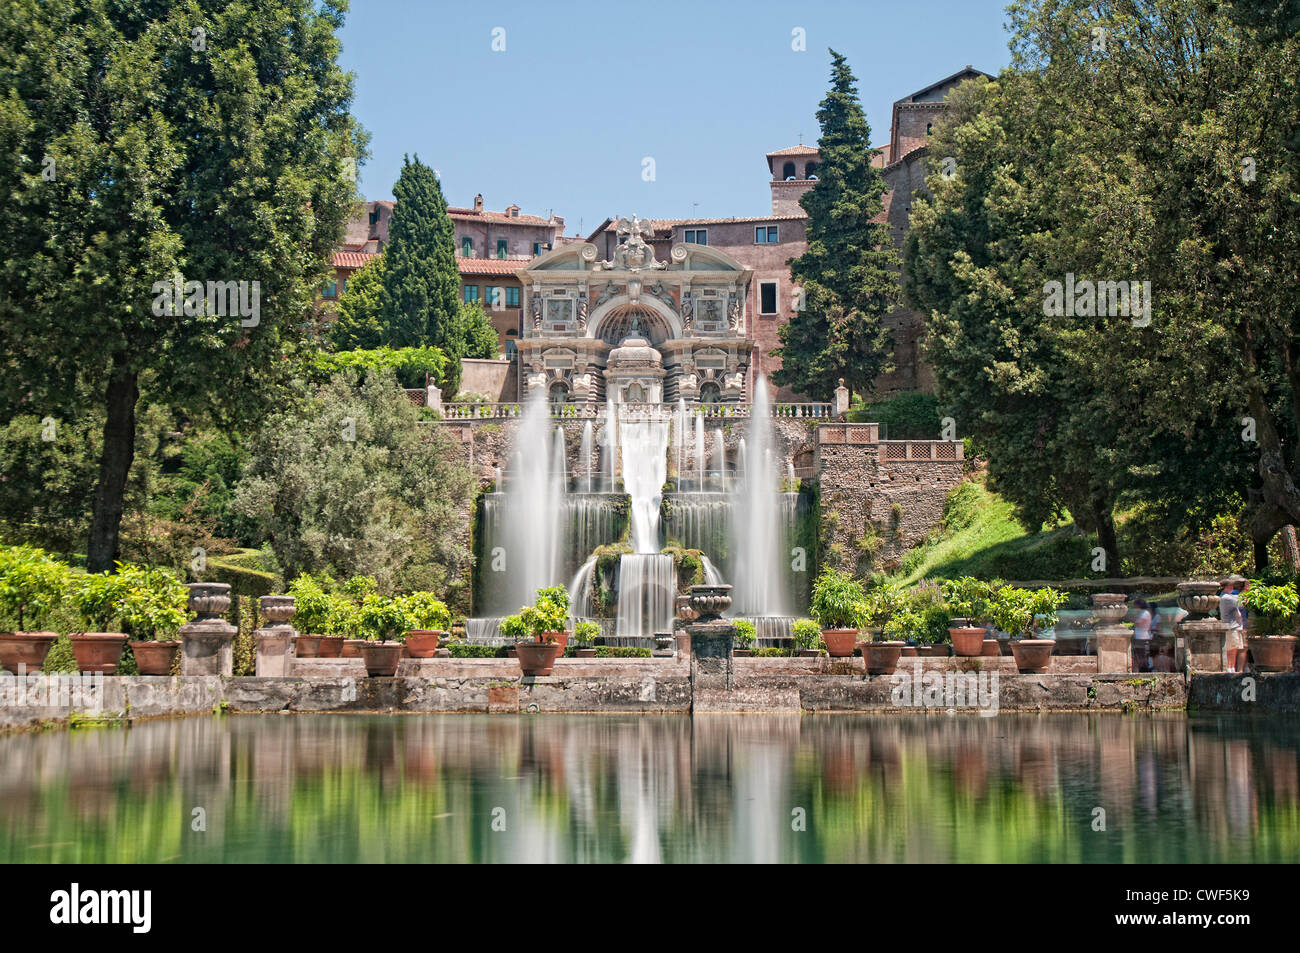 Les Jardins de la renaissance de la Villa d'Este, Tivoli, près de Rome, Italie, Europe Banque D'Images